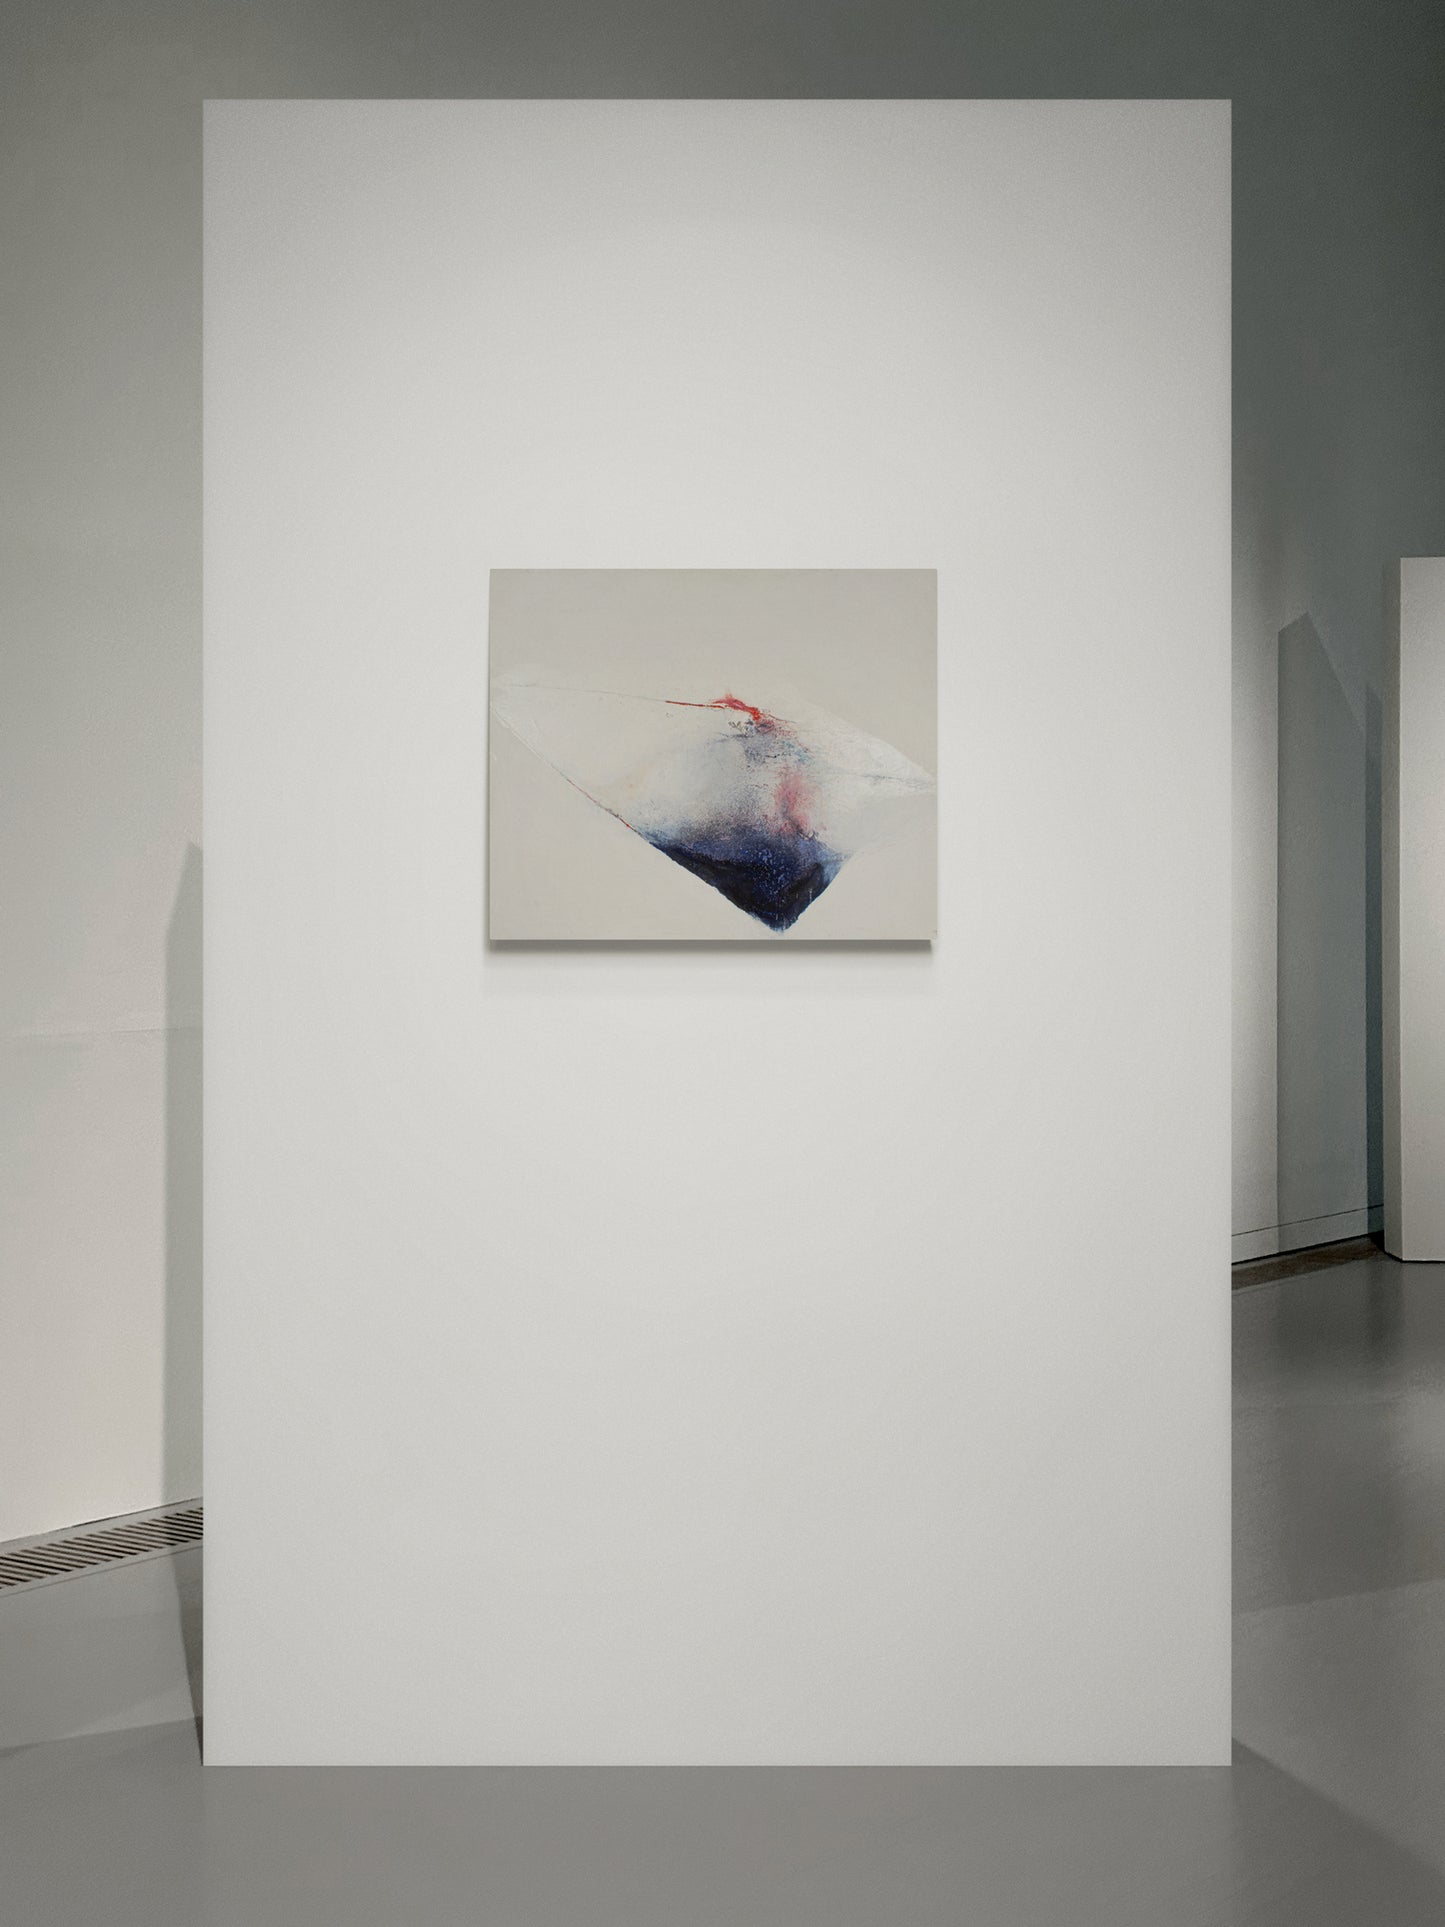 Renato Bertini - “Interference” (60 x 70 cm)